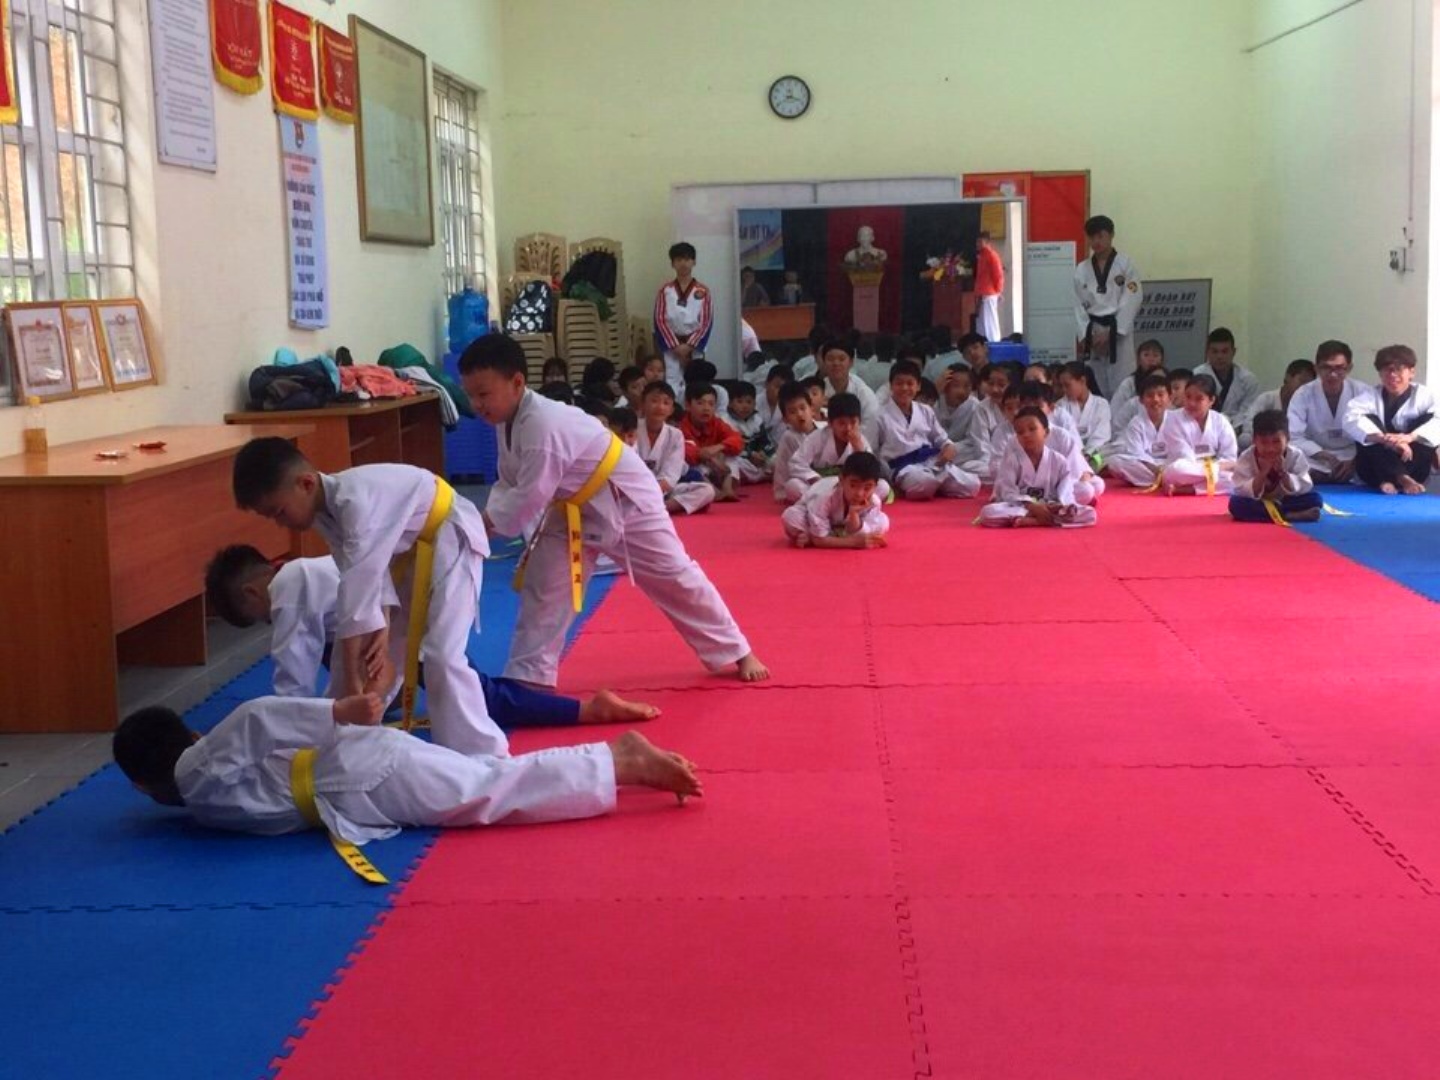 Lớp học võ Teakwondo dành cho trẻ em tại thị trấn Cái Rồng, huyện Vân Đồn.